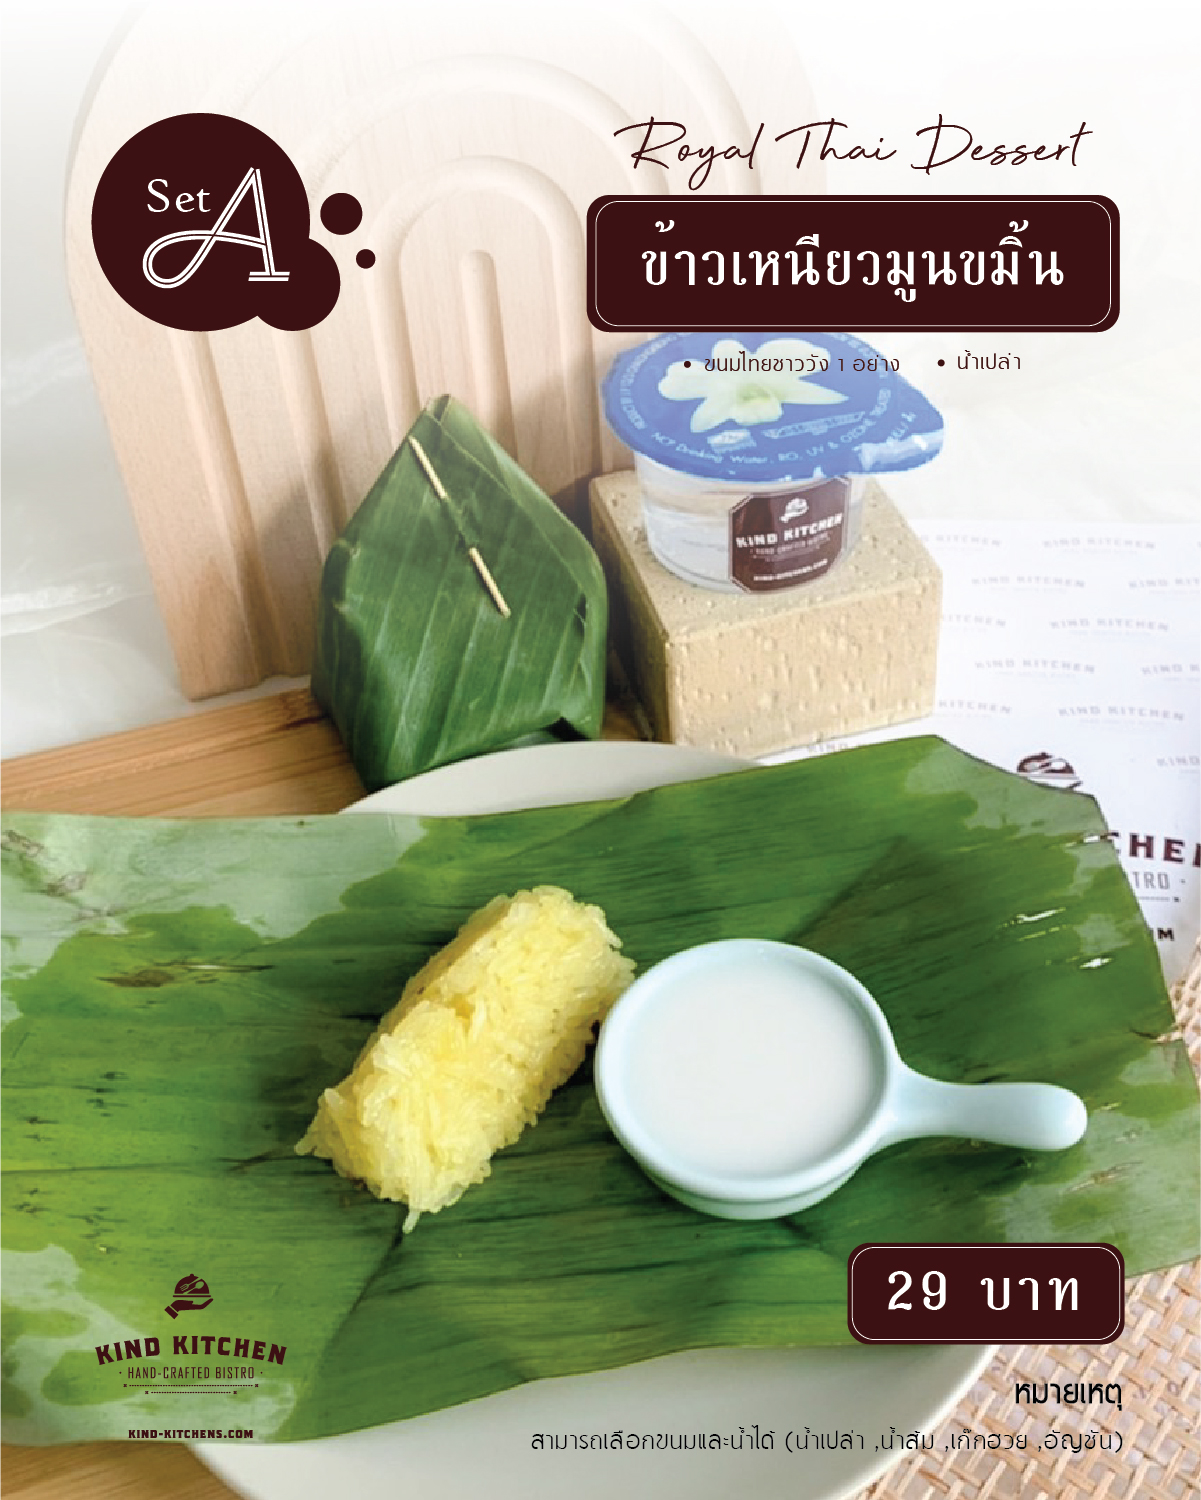 Royal Thai Dessert ข้าวเหนียวมูนขมิ้น พร้อมน้ำ (เลือกได้) Set A